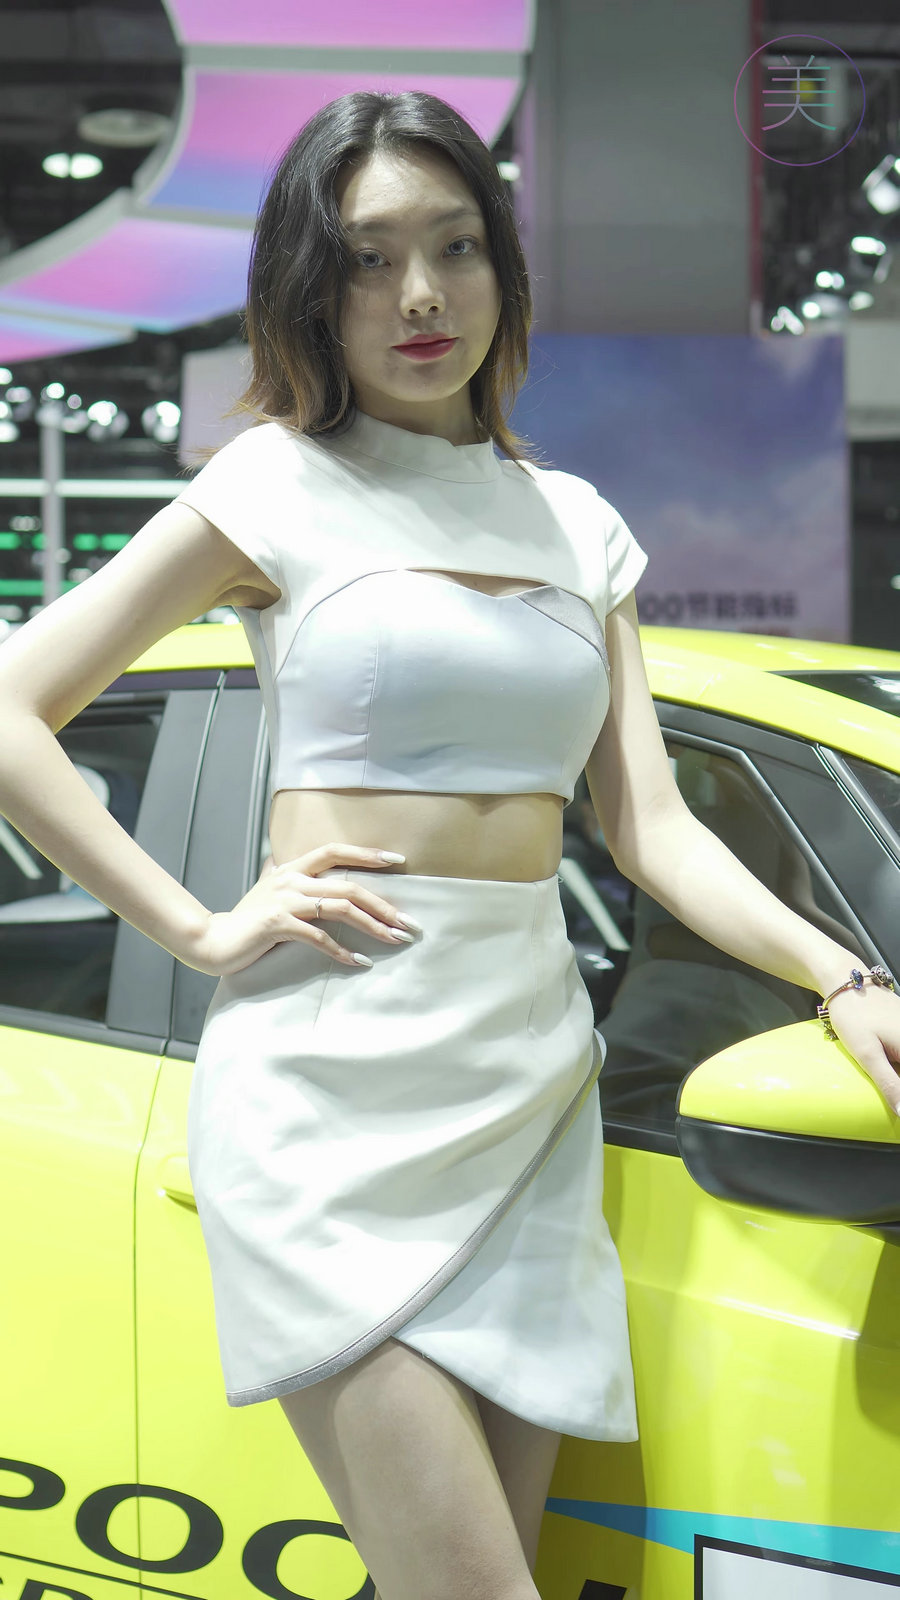 2021 广州华南车展 Racing Model HONDA车模01 [412MB]